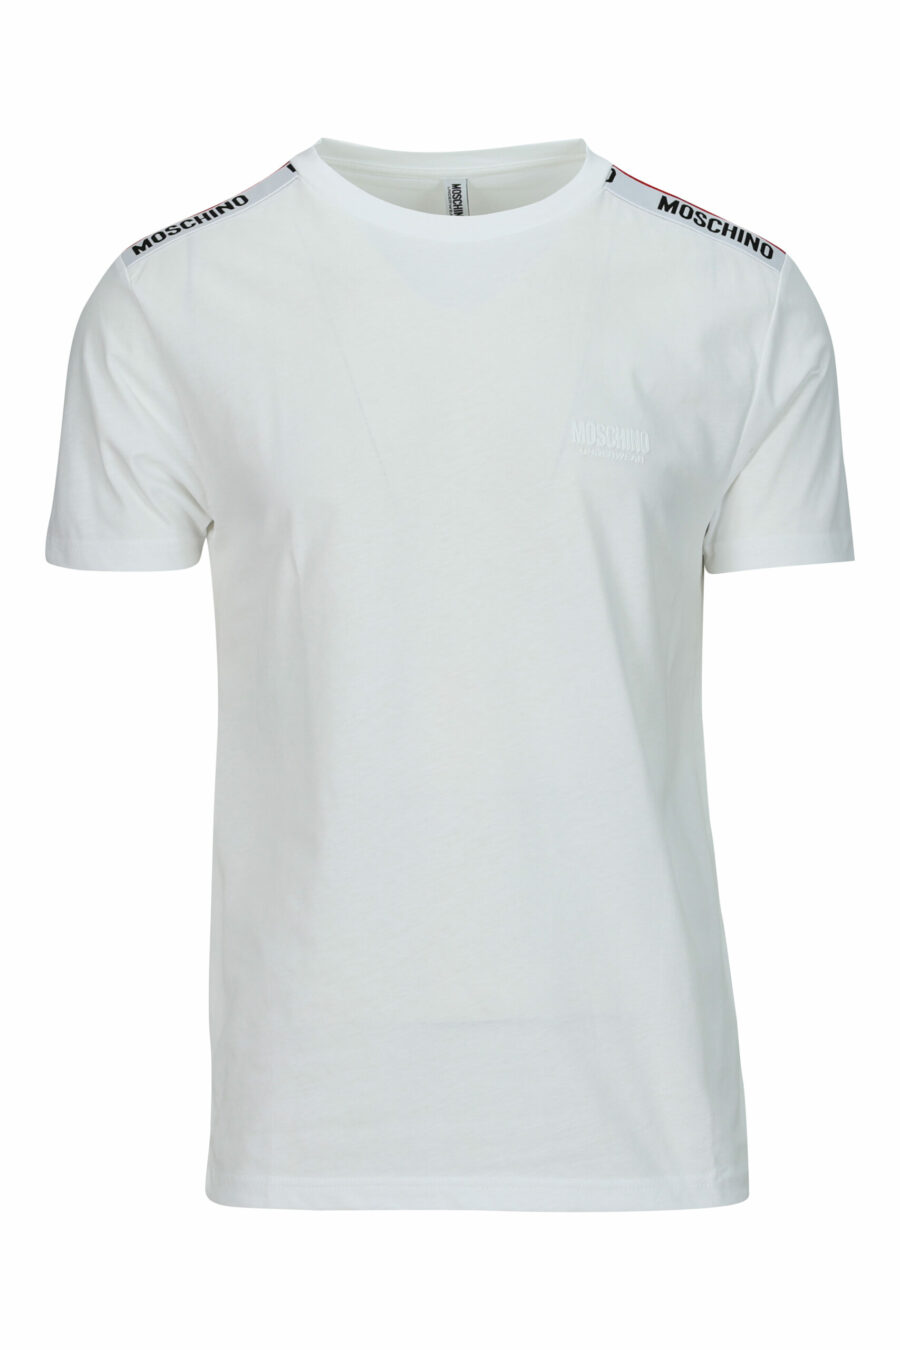 T-shirt blanc avec logo noir et ruban rouge sur les épaules - 667113604213 scaled